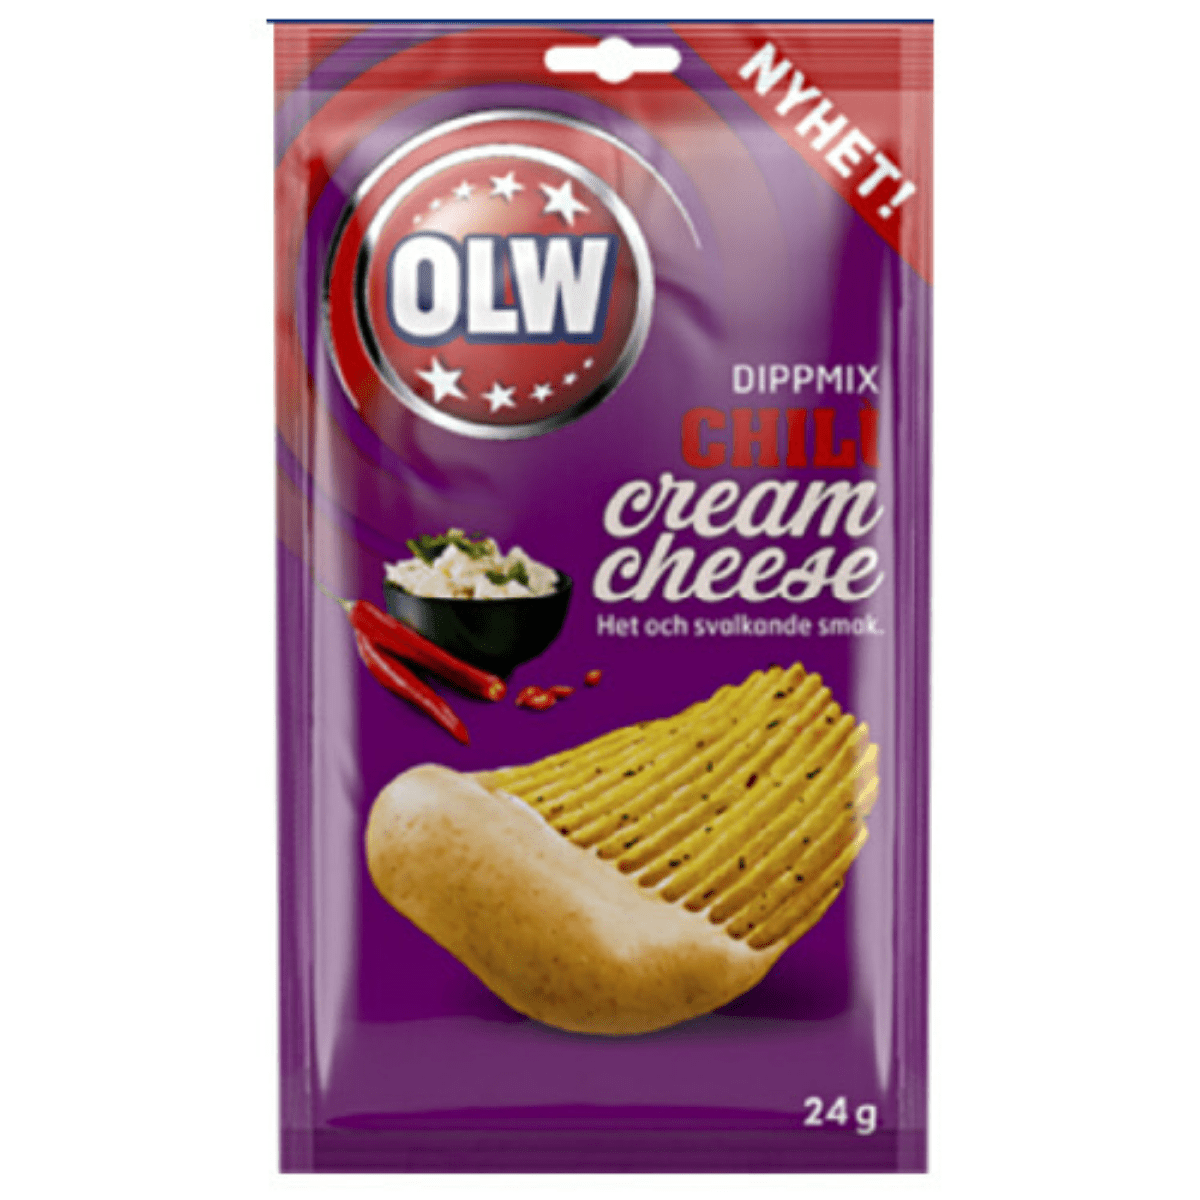 Dipmix Chili Cream Cheese 24g